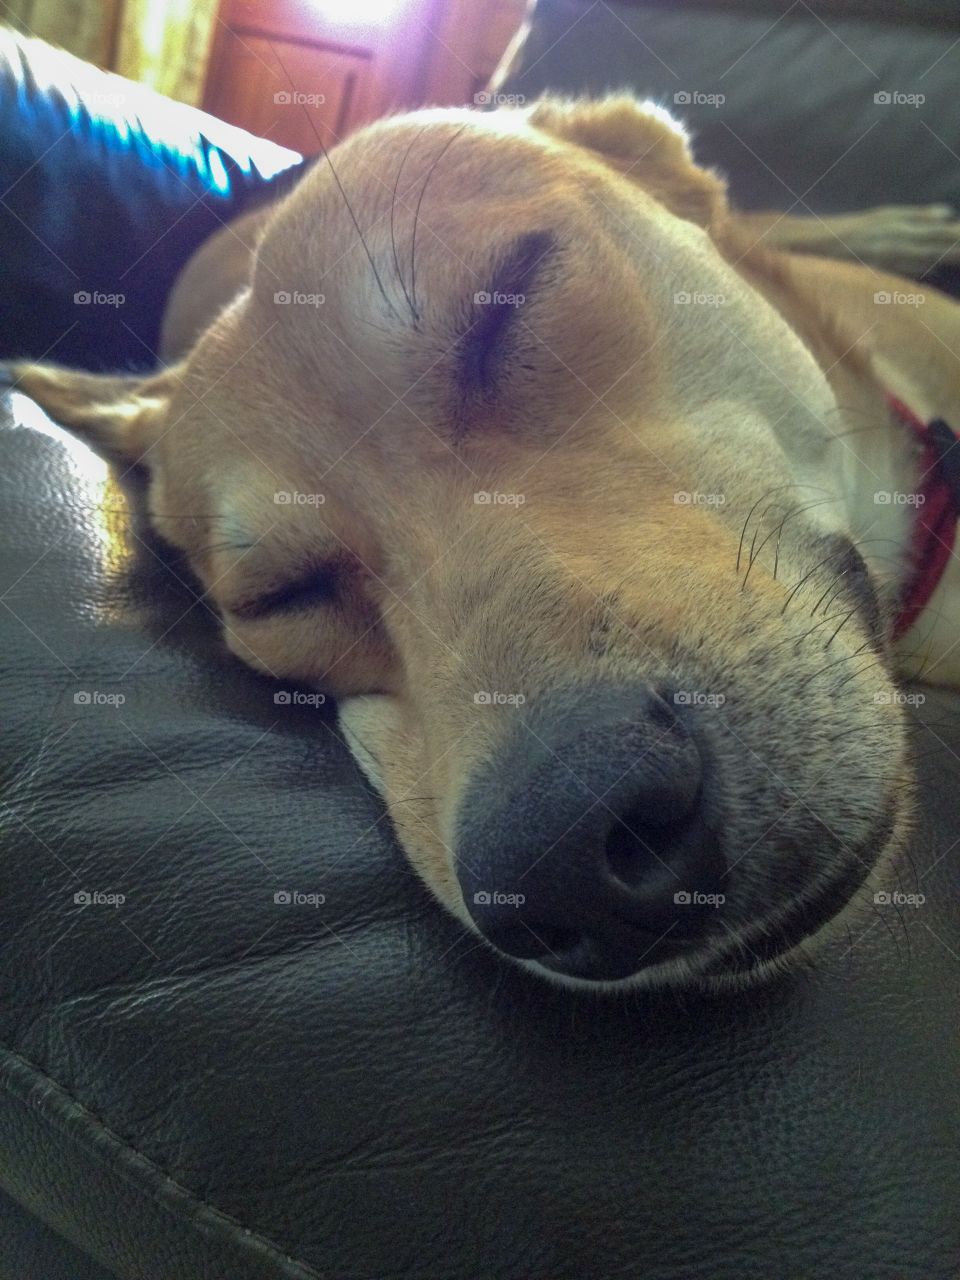 A tired dog in deep sleep 